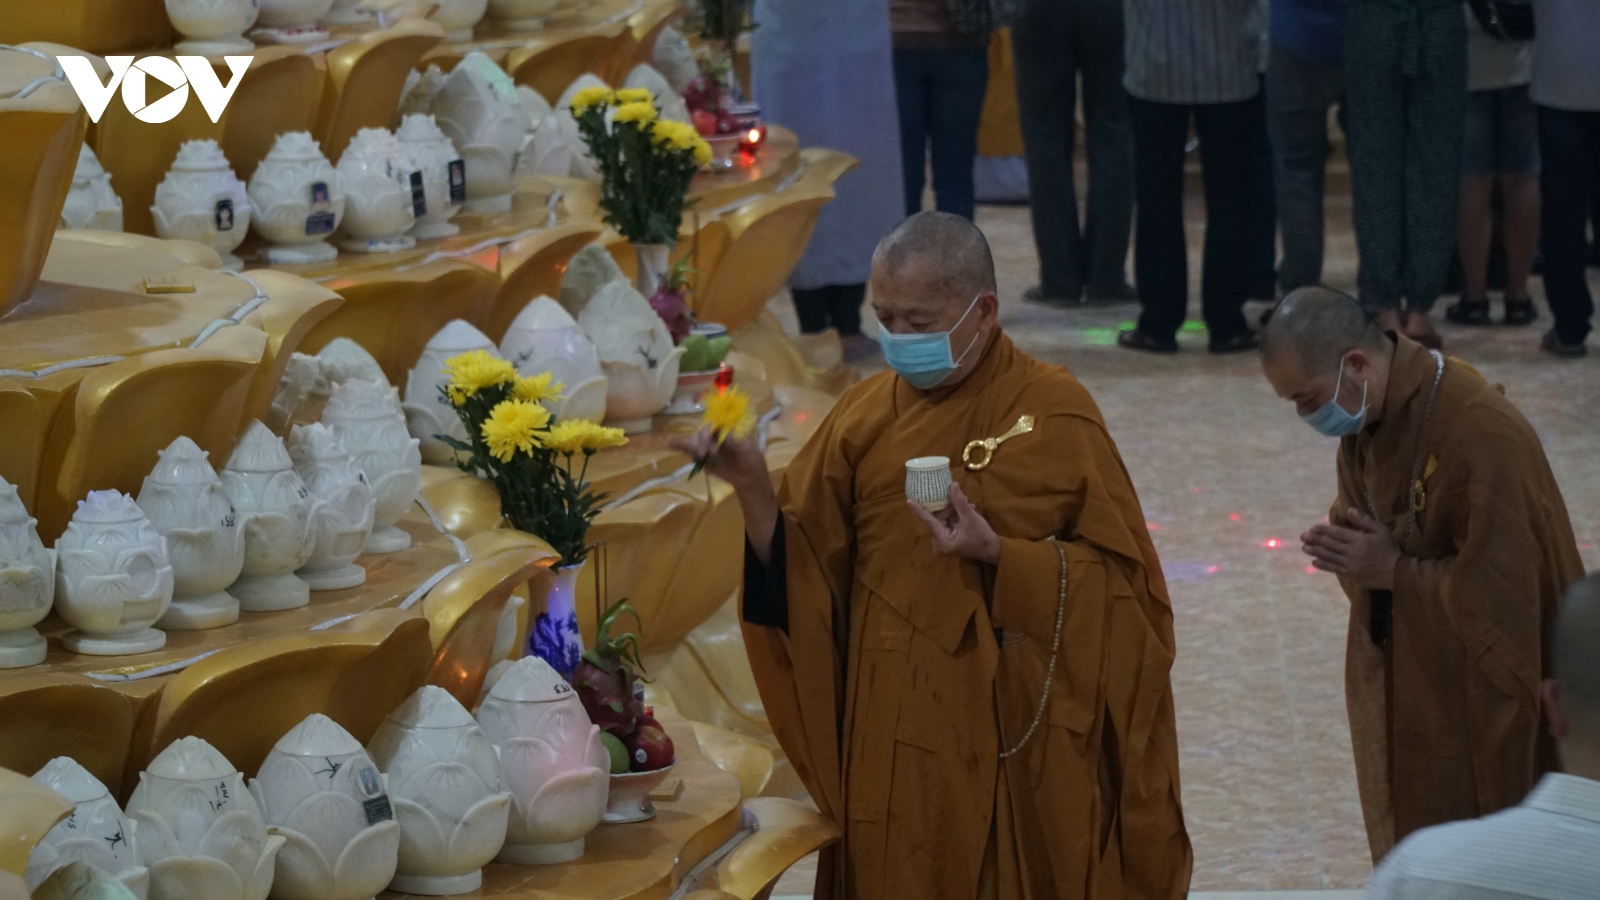 Chùm ảnh: Bên trong hầm lưu giữ hũ cốt ở chùa Kỳ Quang 2